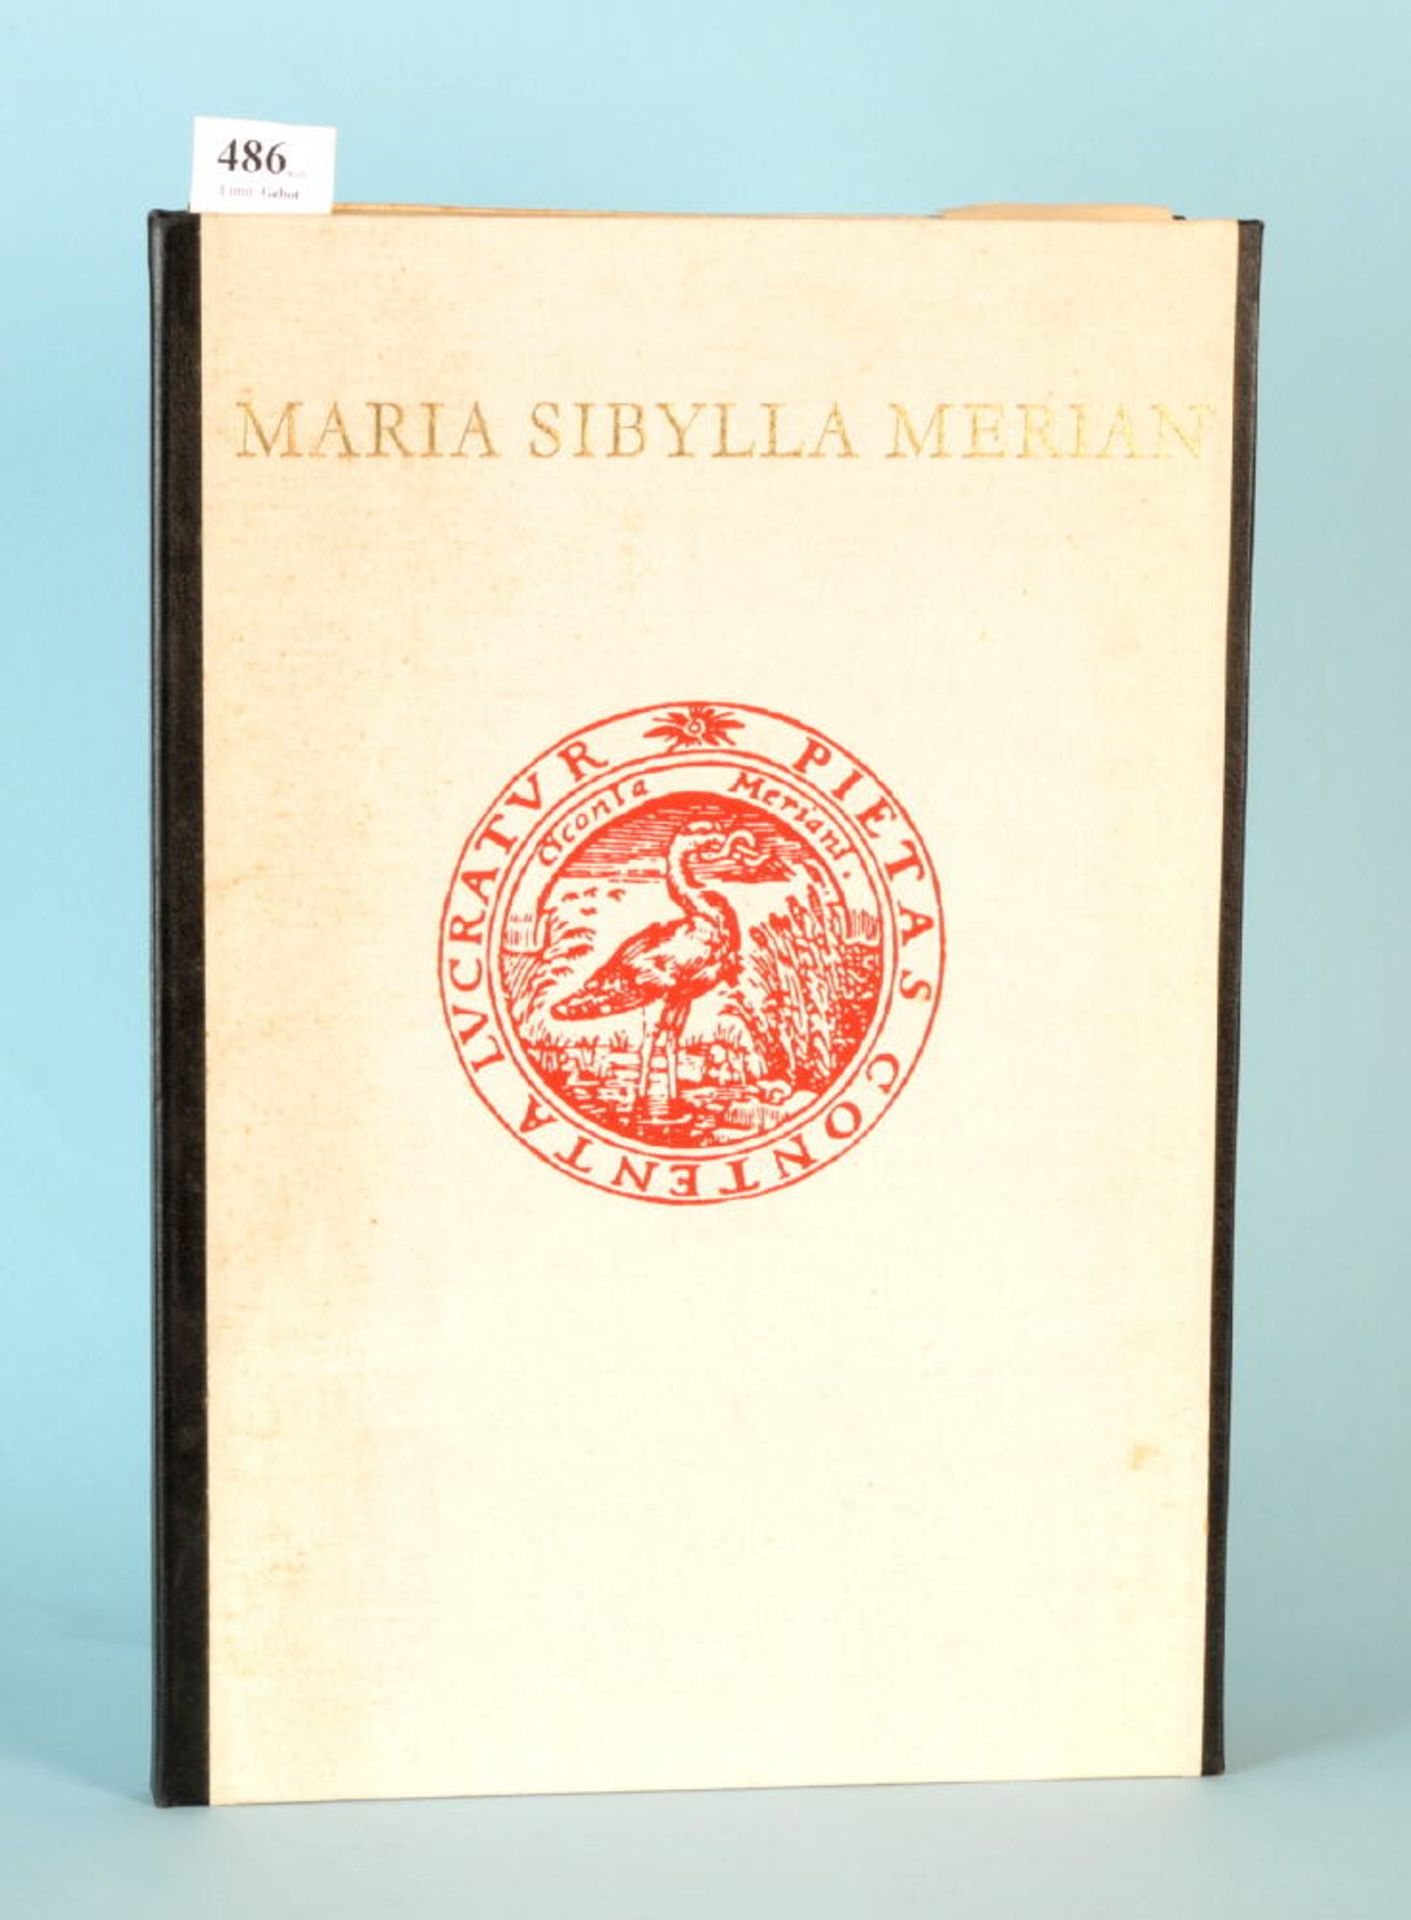 Nebel, Gerhard "Maria Sibylla Merien - Die schönsten Tafeln...""...aus dem grossen Buch der